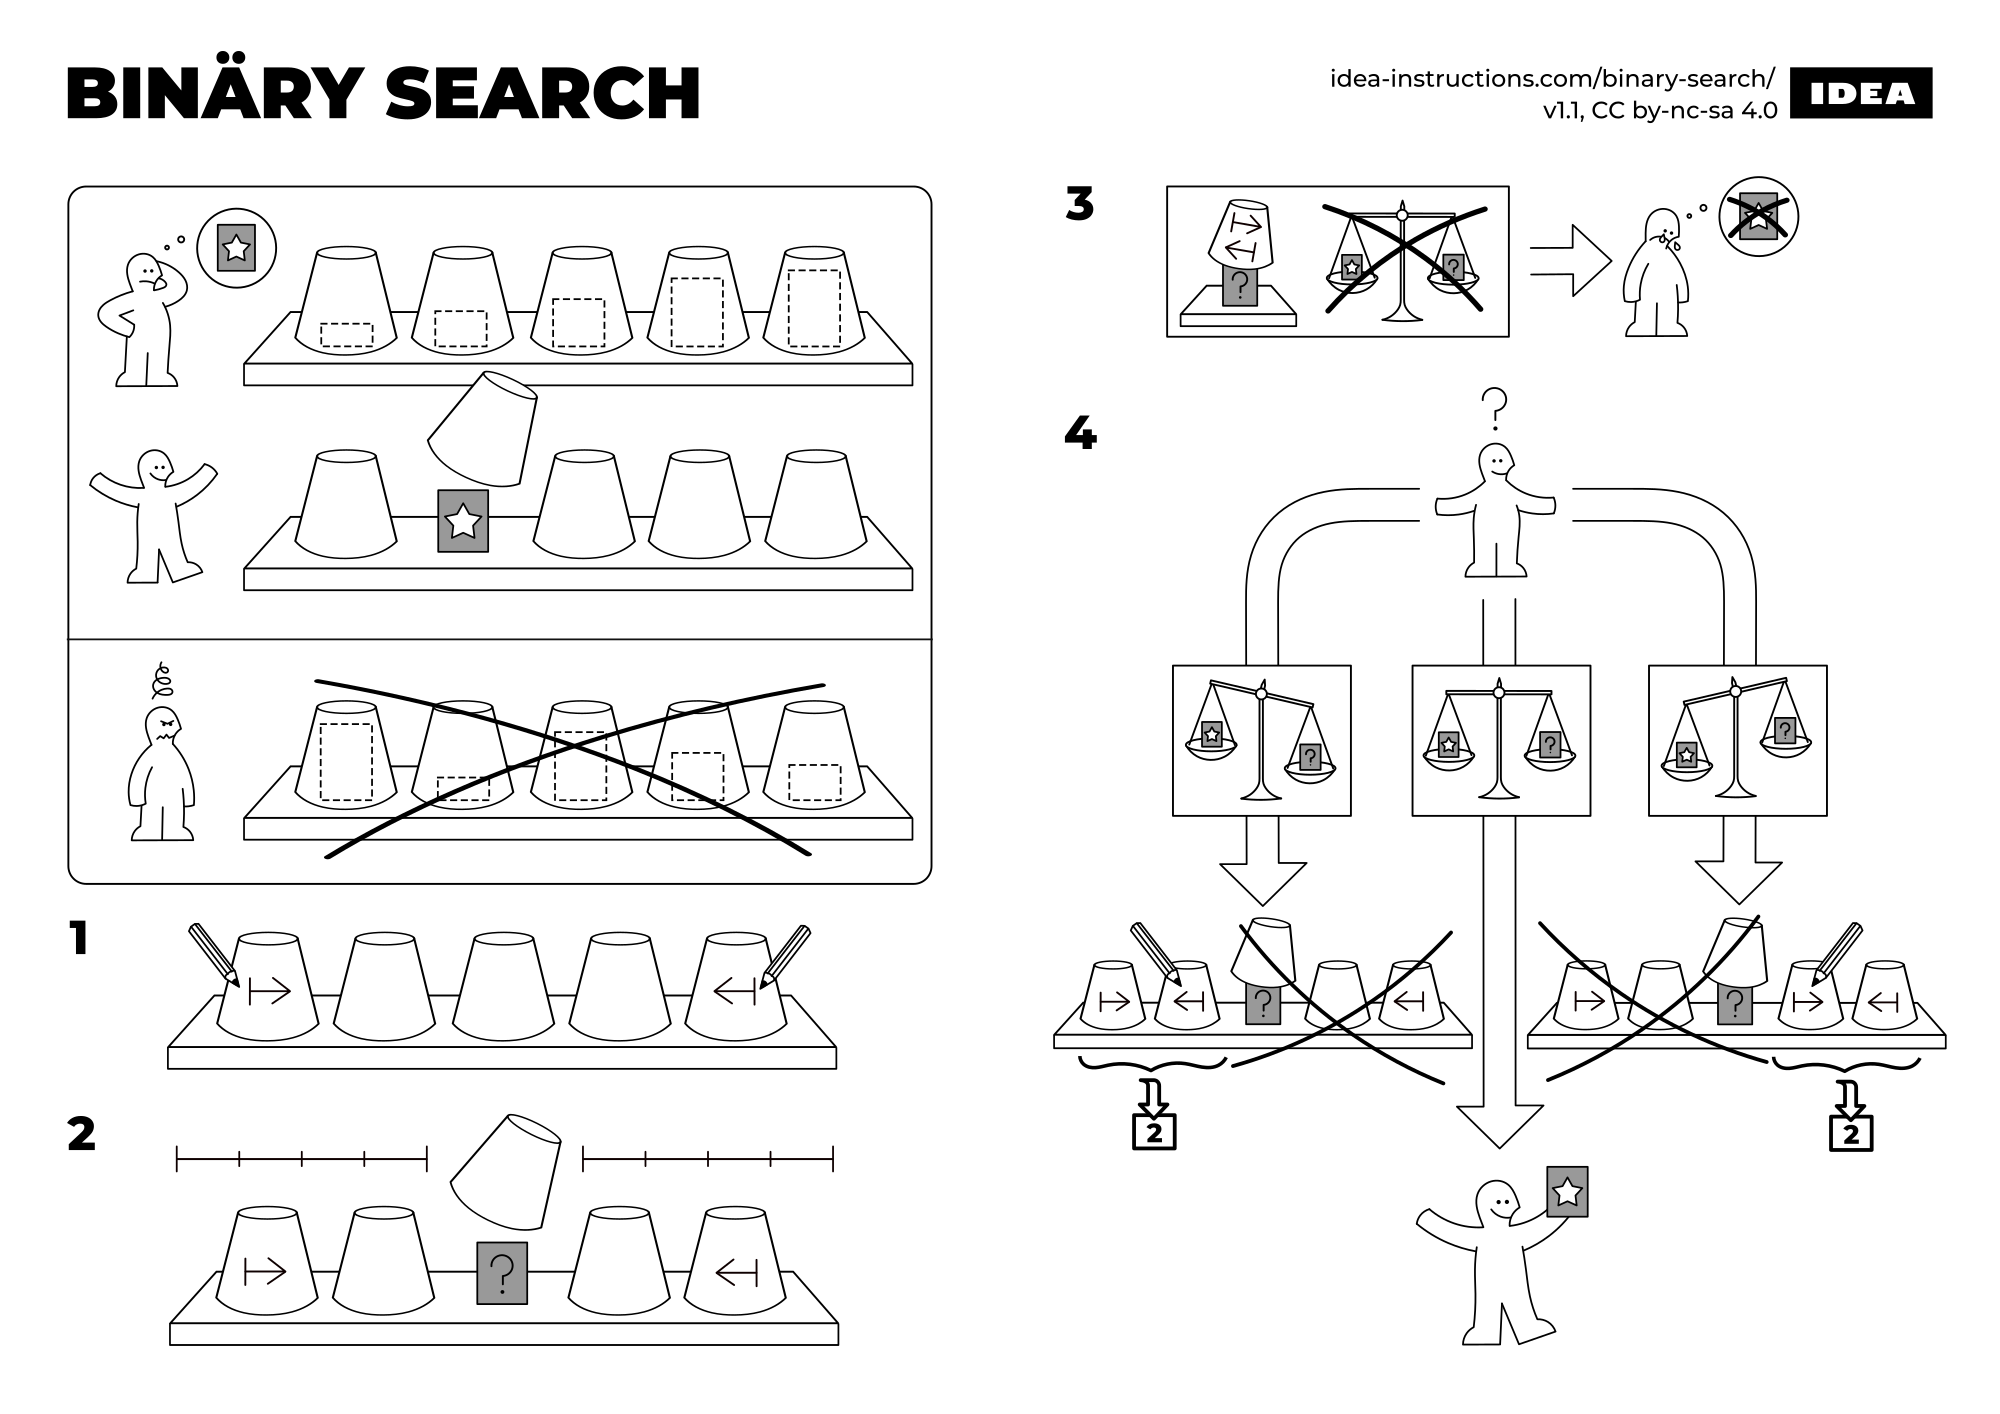 Binary Search Algorithm in One Image - IDEA